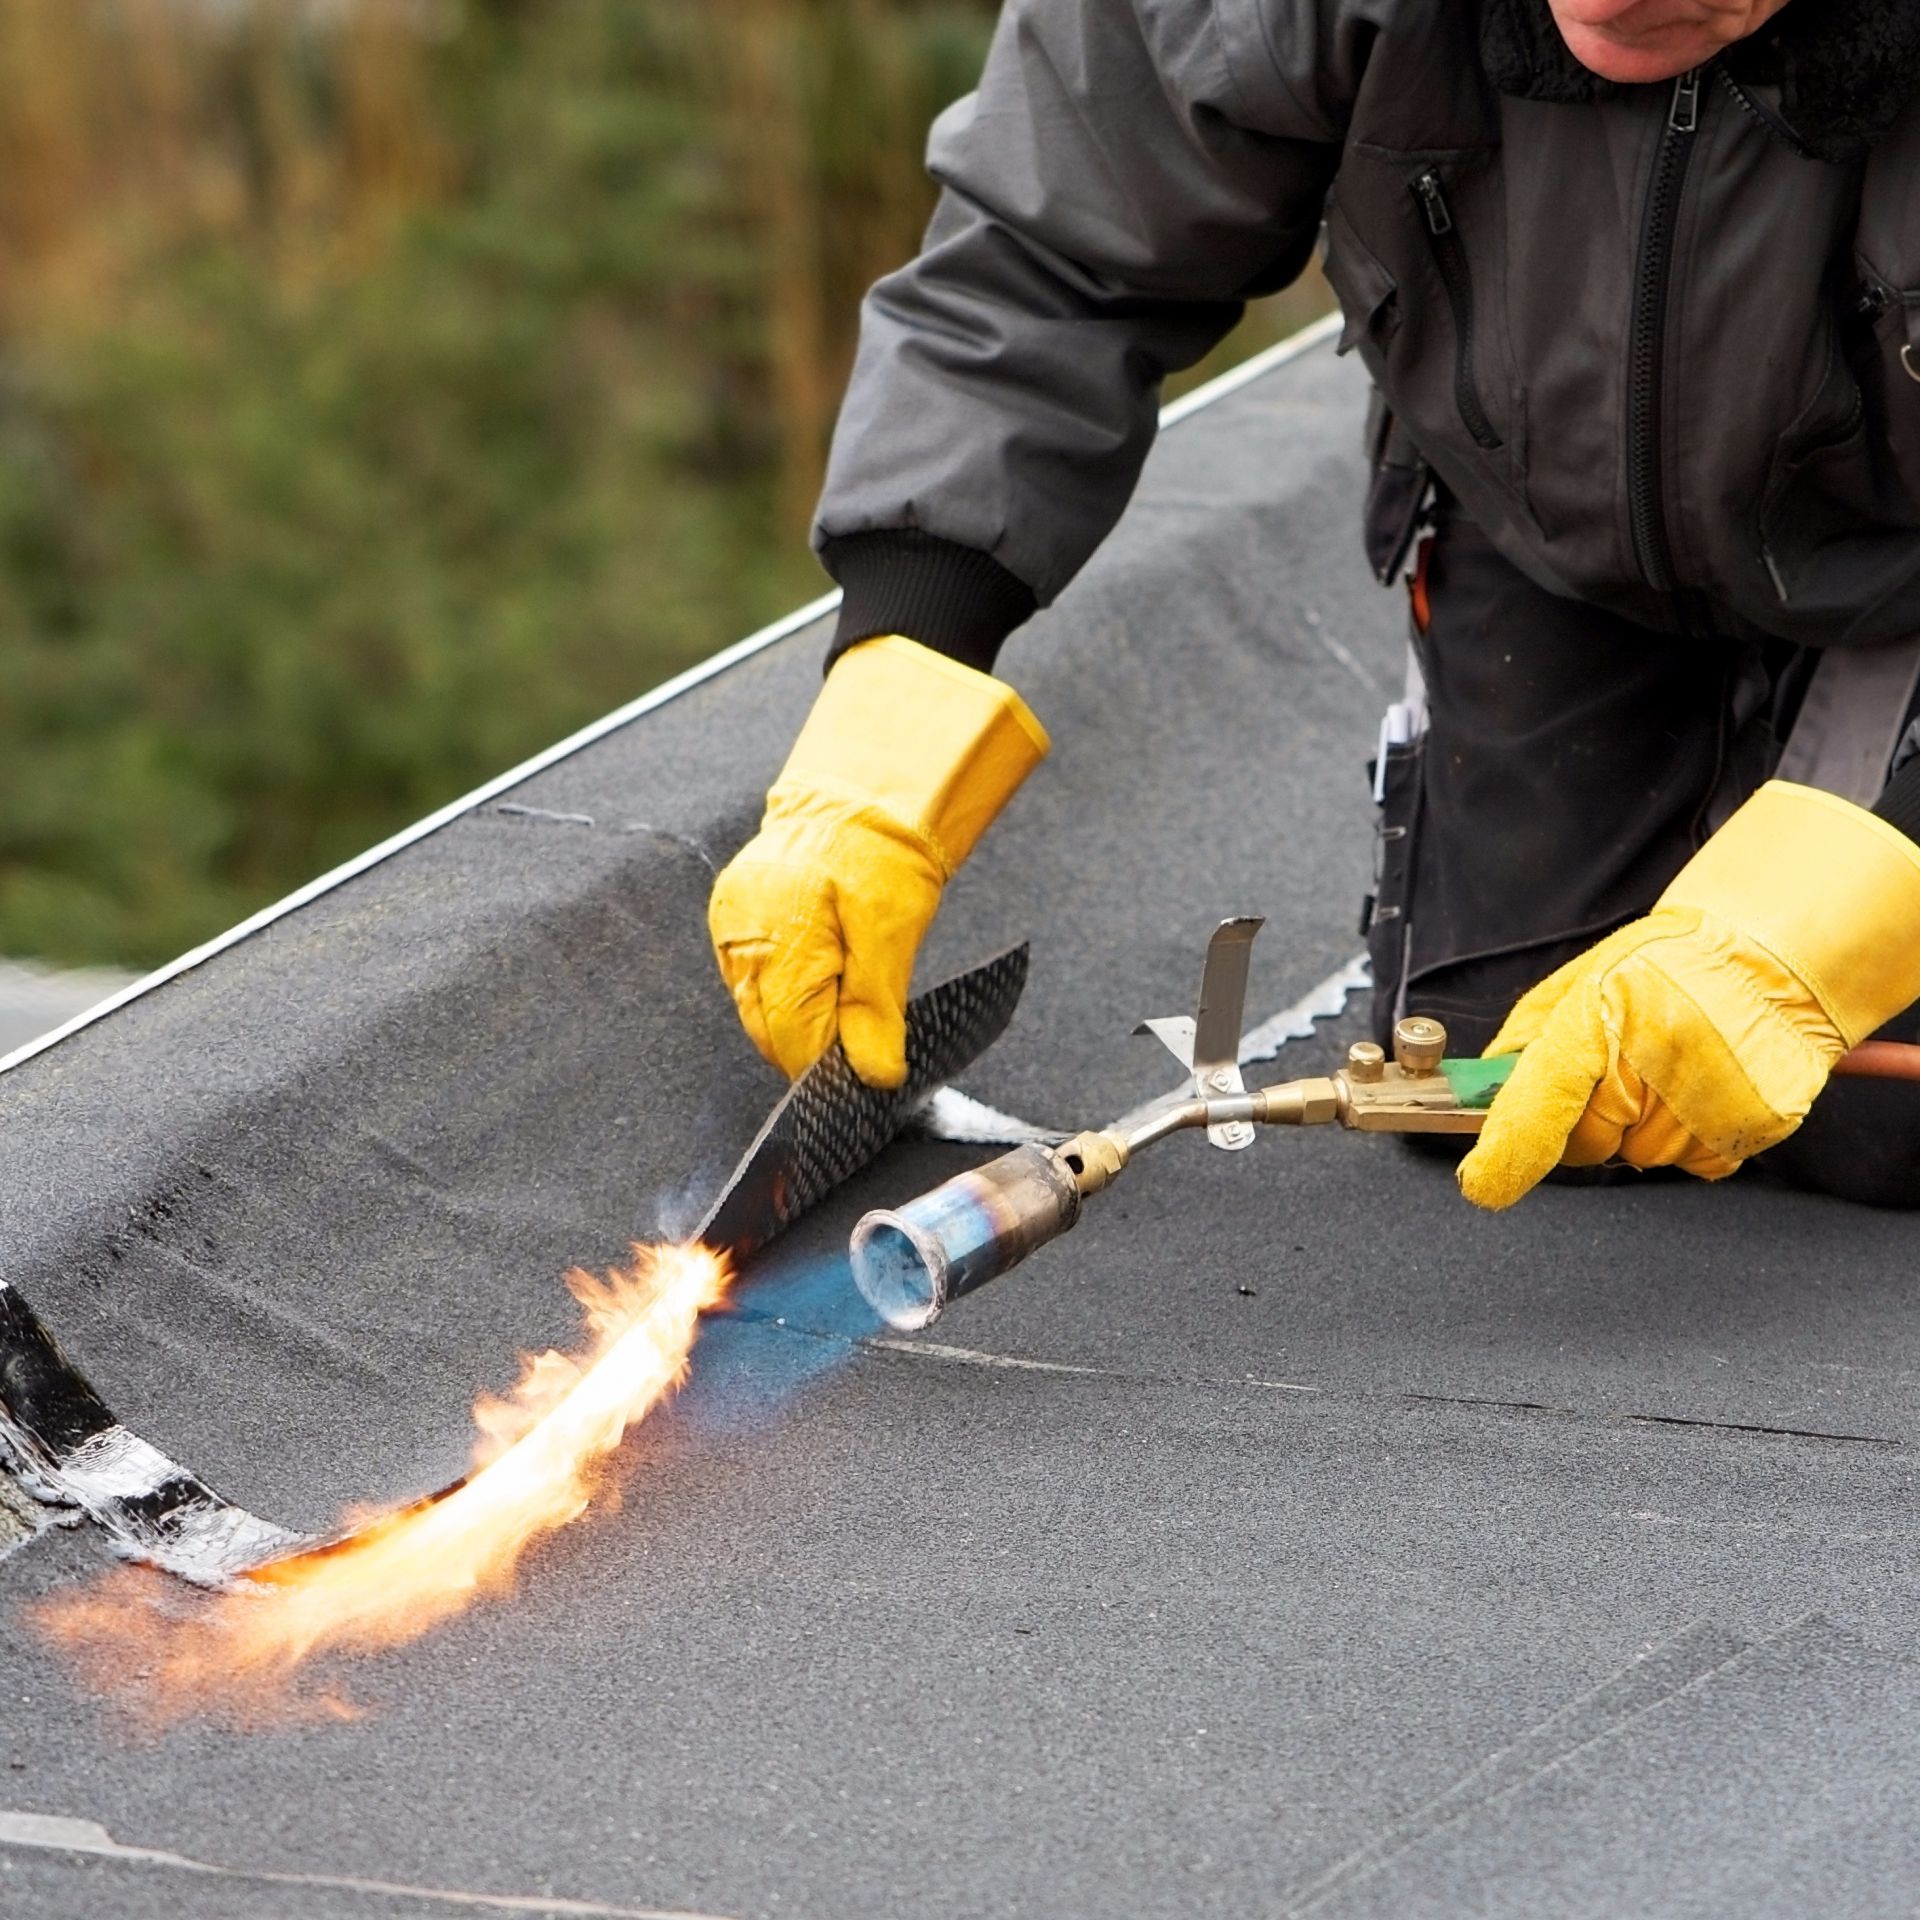 Poptávka na výroba a montáž sedlové střechy RD (Střechy, půdy) - Chrudim